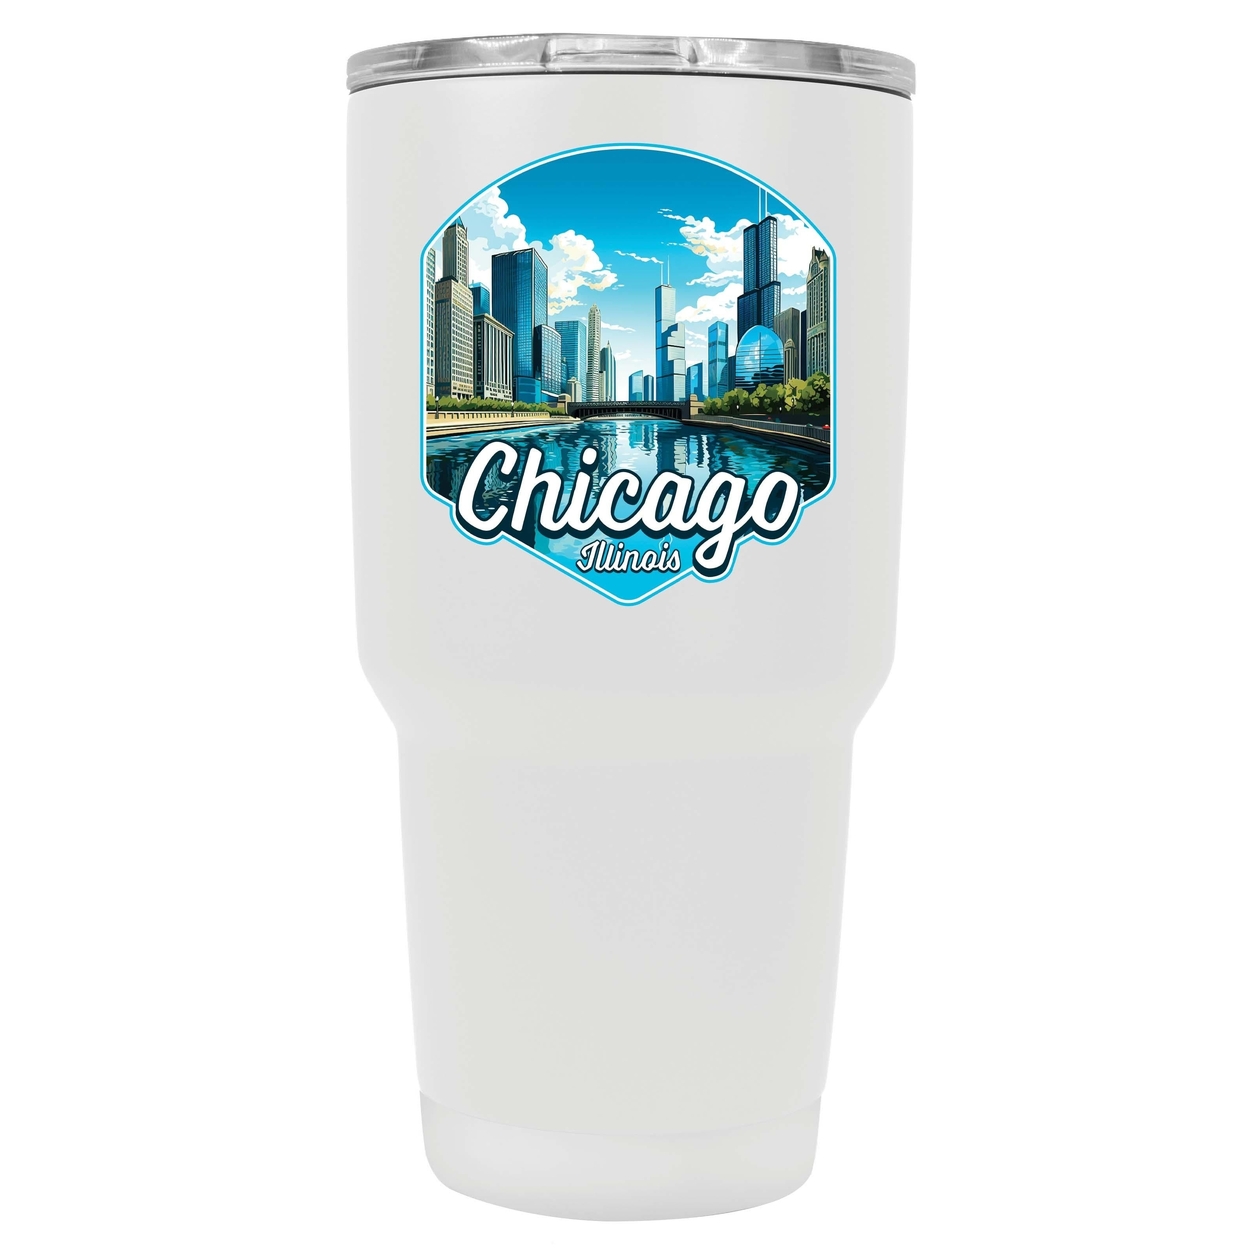 Chicago Illinois A Souvenir 24 Oz Insulated Tumbler - White,,Single